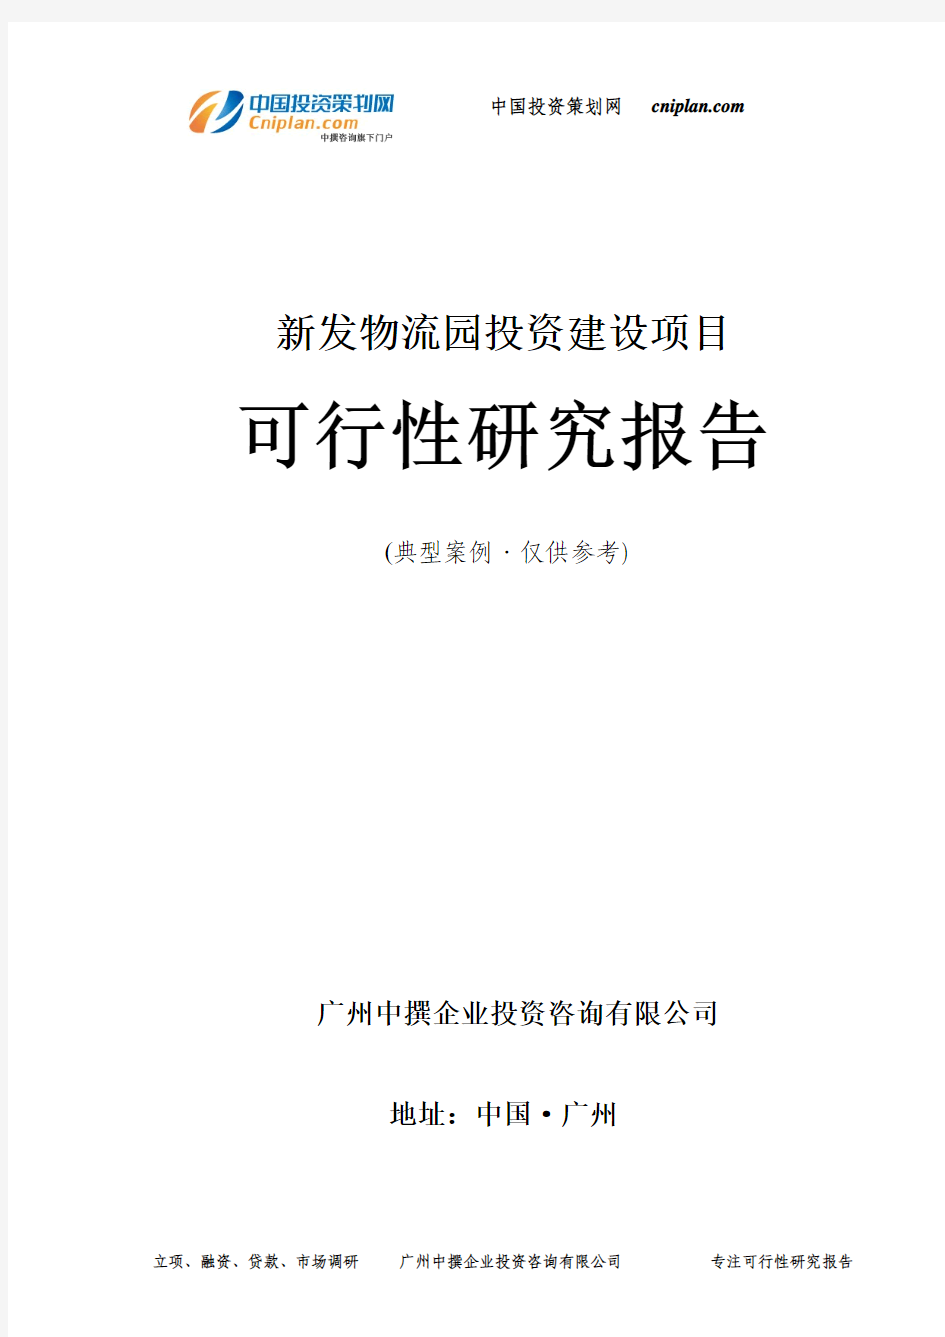 新发物流园投资建设项目可行性研究报告-广州中撰咨询